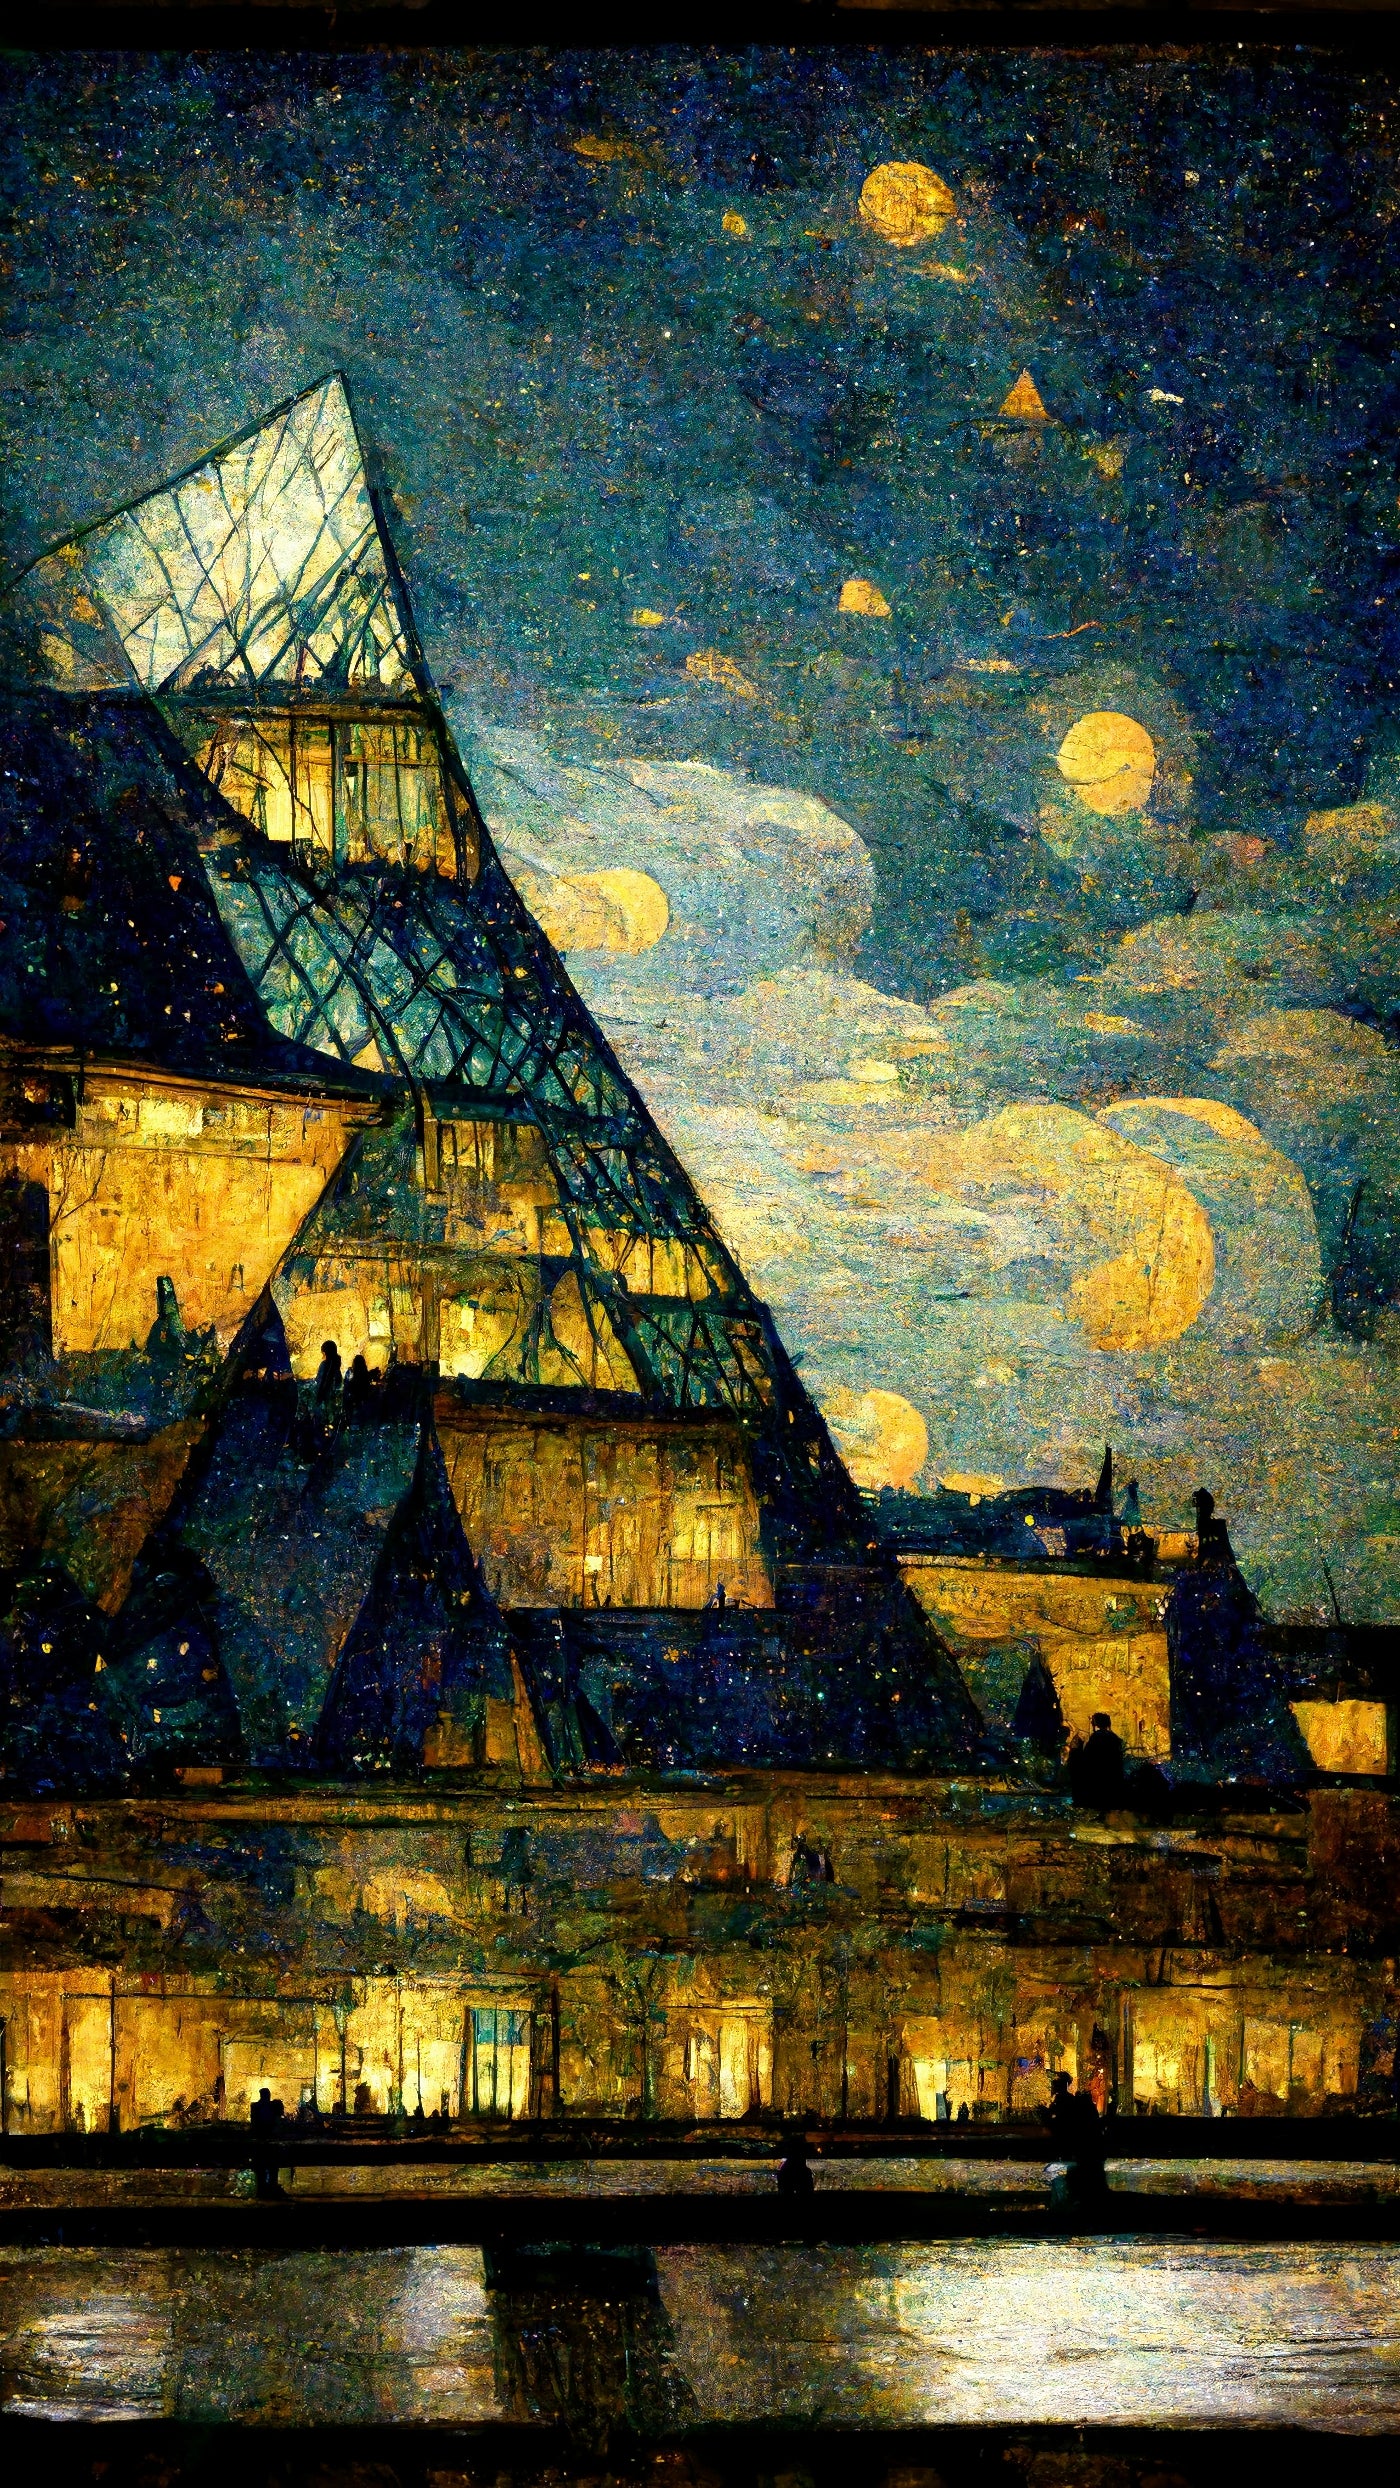 Tableau de déco, le Louvre selon Van Gogh, la vision idyllique de l'avenir, où l'art et la culture peuvent être intégrés de manière harmonieuse à la vie quotidienne des gens. Le musée du Louvre s'élève fièrement, transfiguré en un immeuble scintillant, illuminé par les lumières chaleureuses de ses habitants